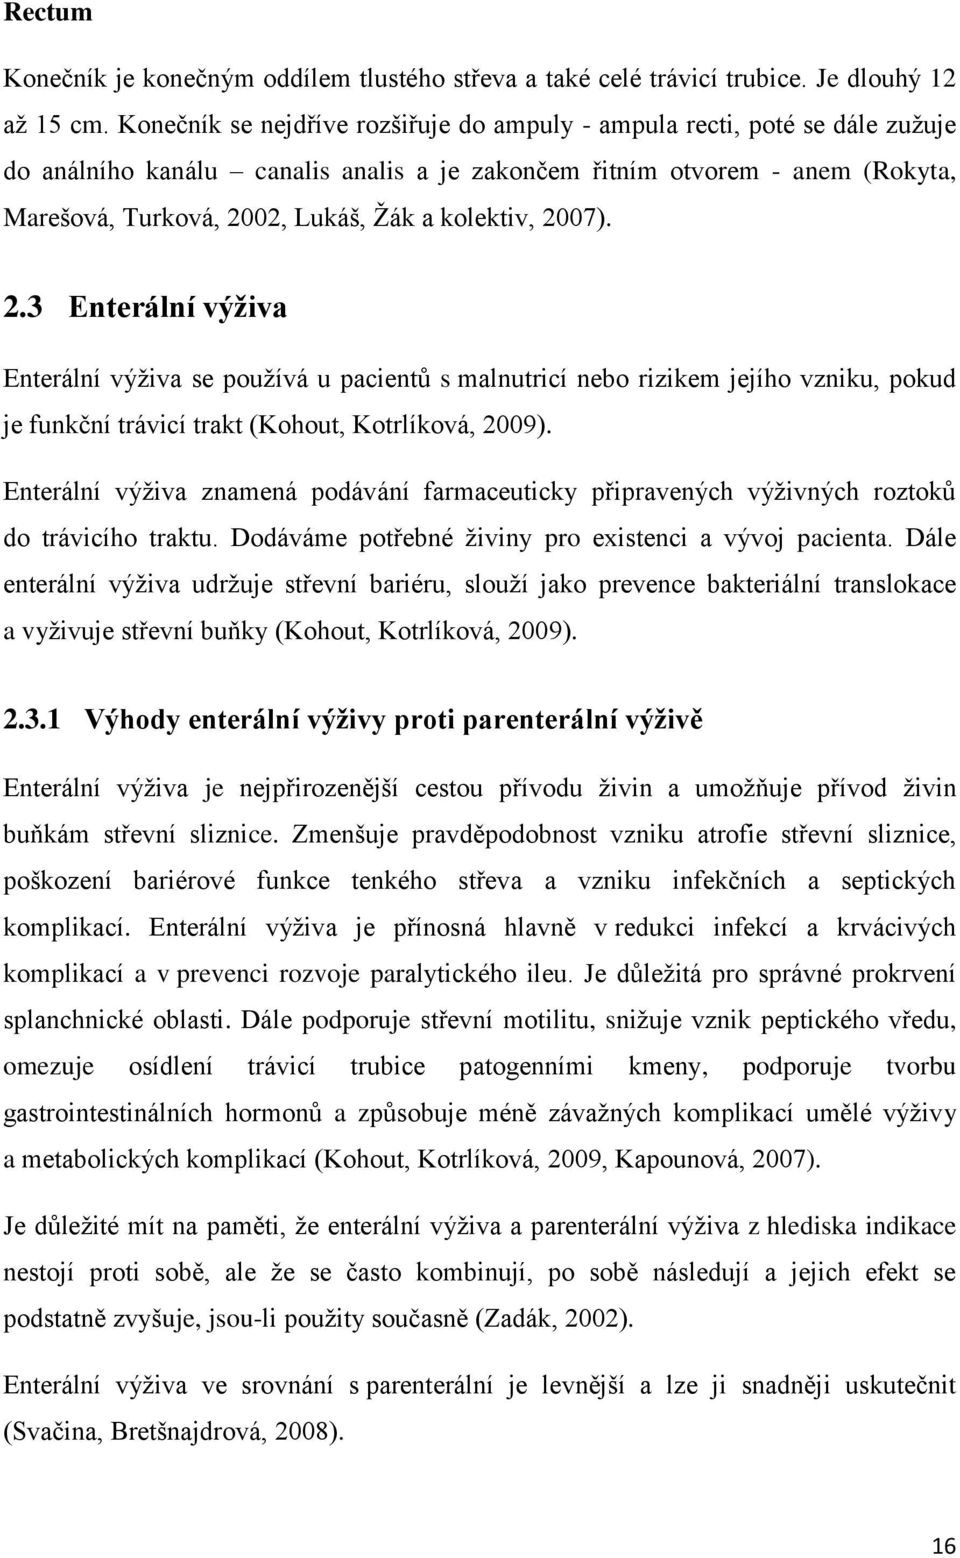 kolektiv, 2007). 2.3 Enterální výživa Enterální výživa se používá u pacientů s malnutricí nebo rizikem jejího vzniku, pokud je funkční trávicí trakt (Kohout, Kotrlíková, 2009).